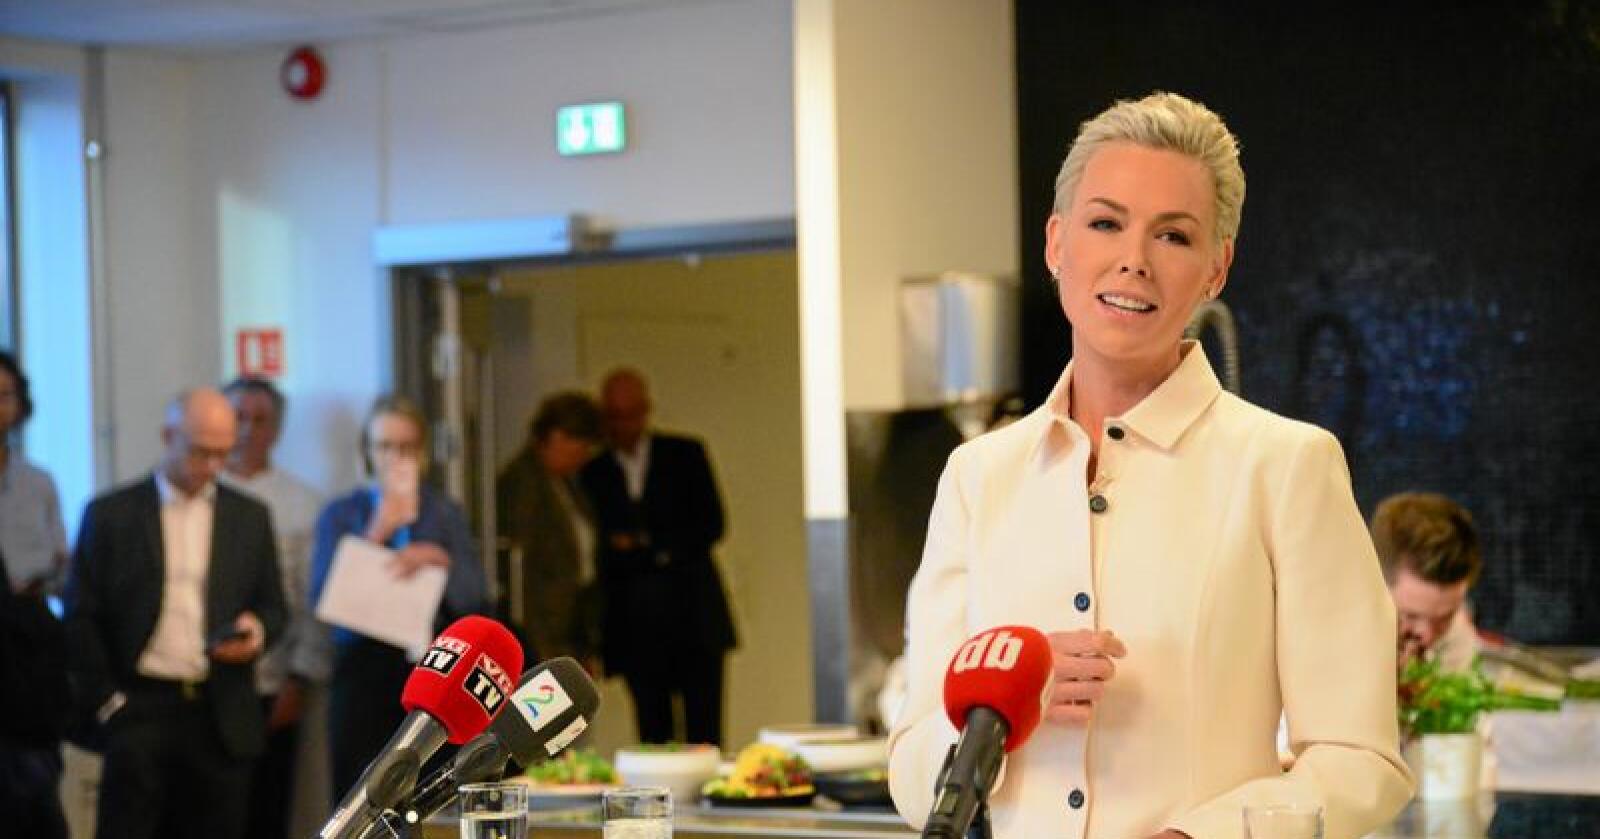 Nordmenn må kutte kjøttforbruket med nesten 100 gram, ifølge EAT-rapporten. Bildet viser lederen av EAT, Gunhild Stordalen. Foto: Siri Juell Rasmussen.